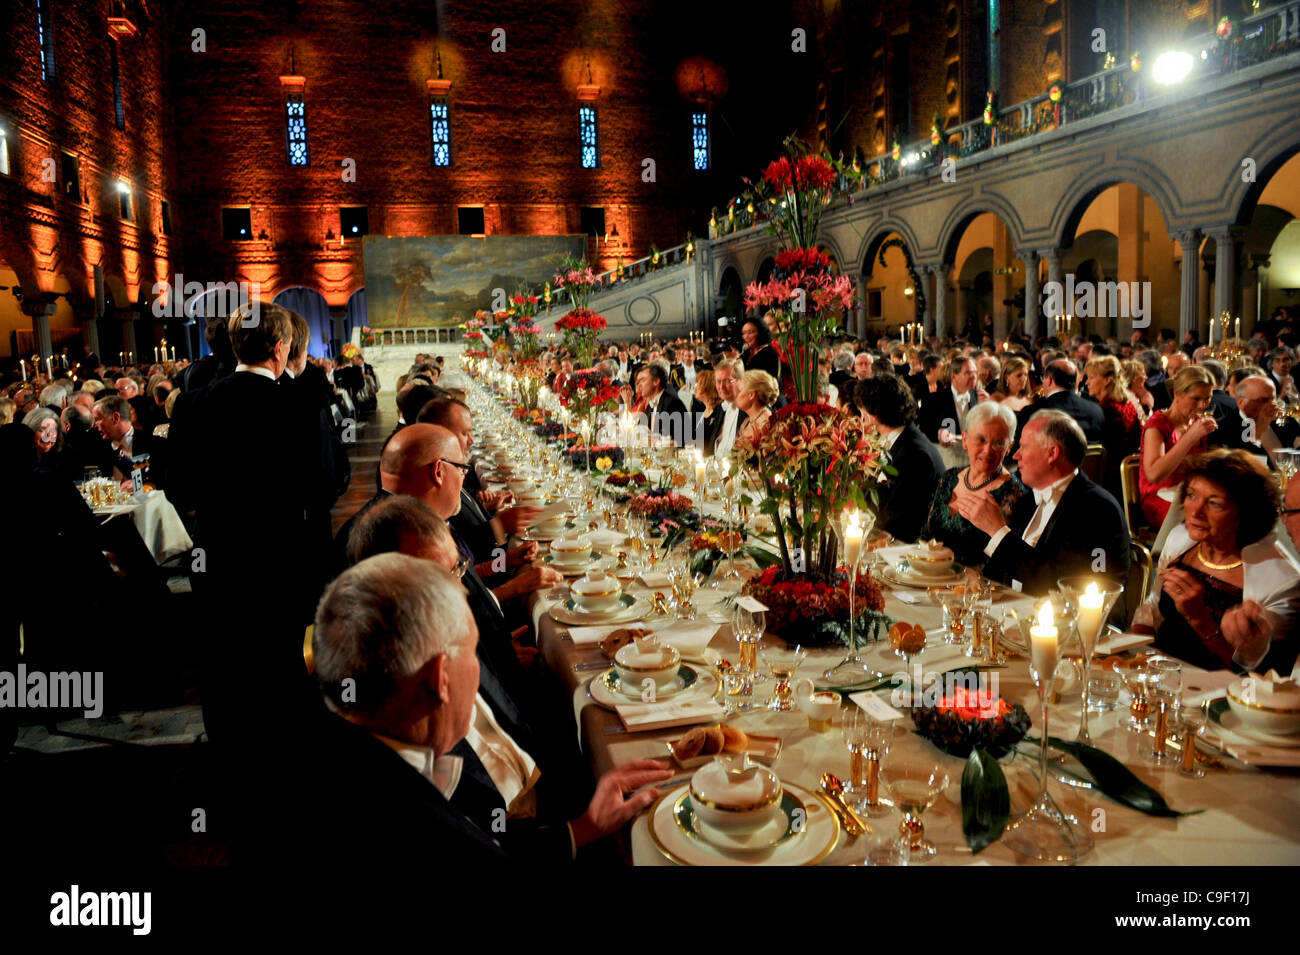 le-diner-de-gala-en-lhonneur-des-laureats-du-prix-nobel-de-la-paix-dans-la-salle-bleue-a-stockholm-lhotel-de-ville-le-samedi-10-decembre-2011-c9f17j.jpg